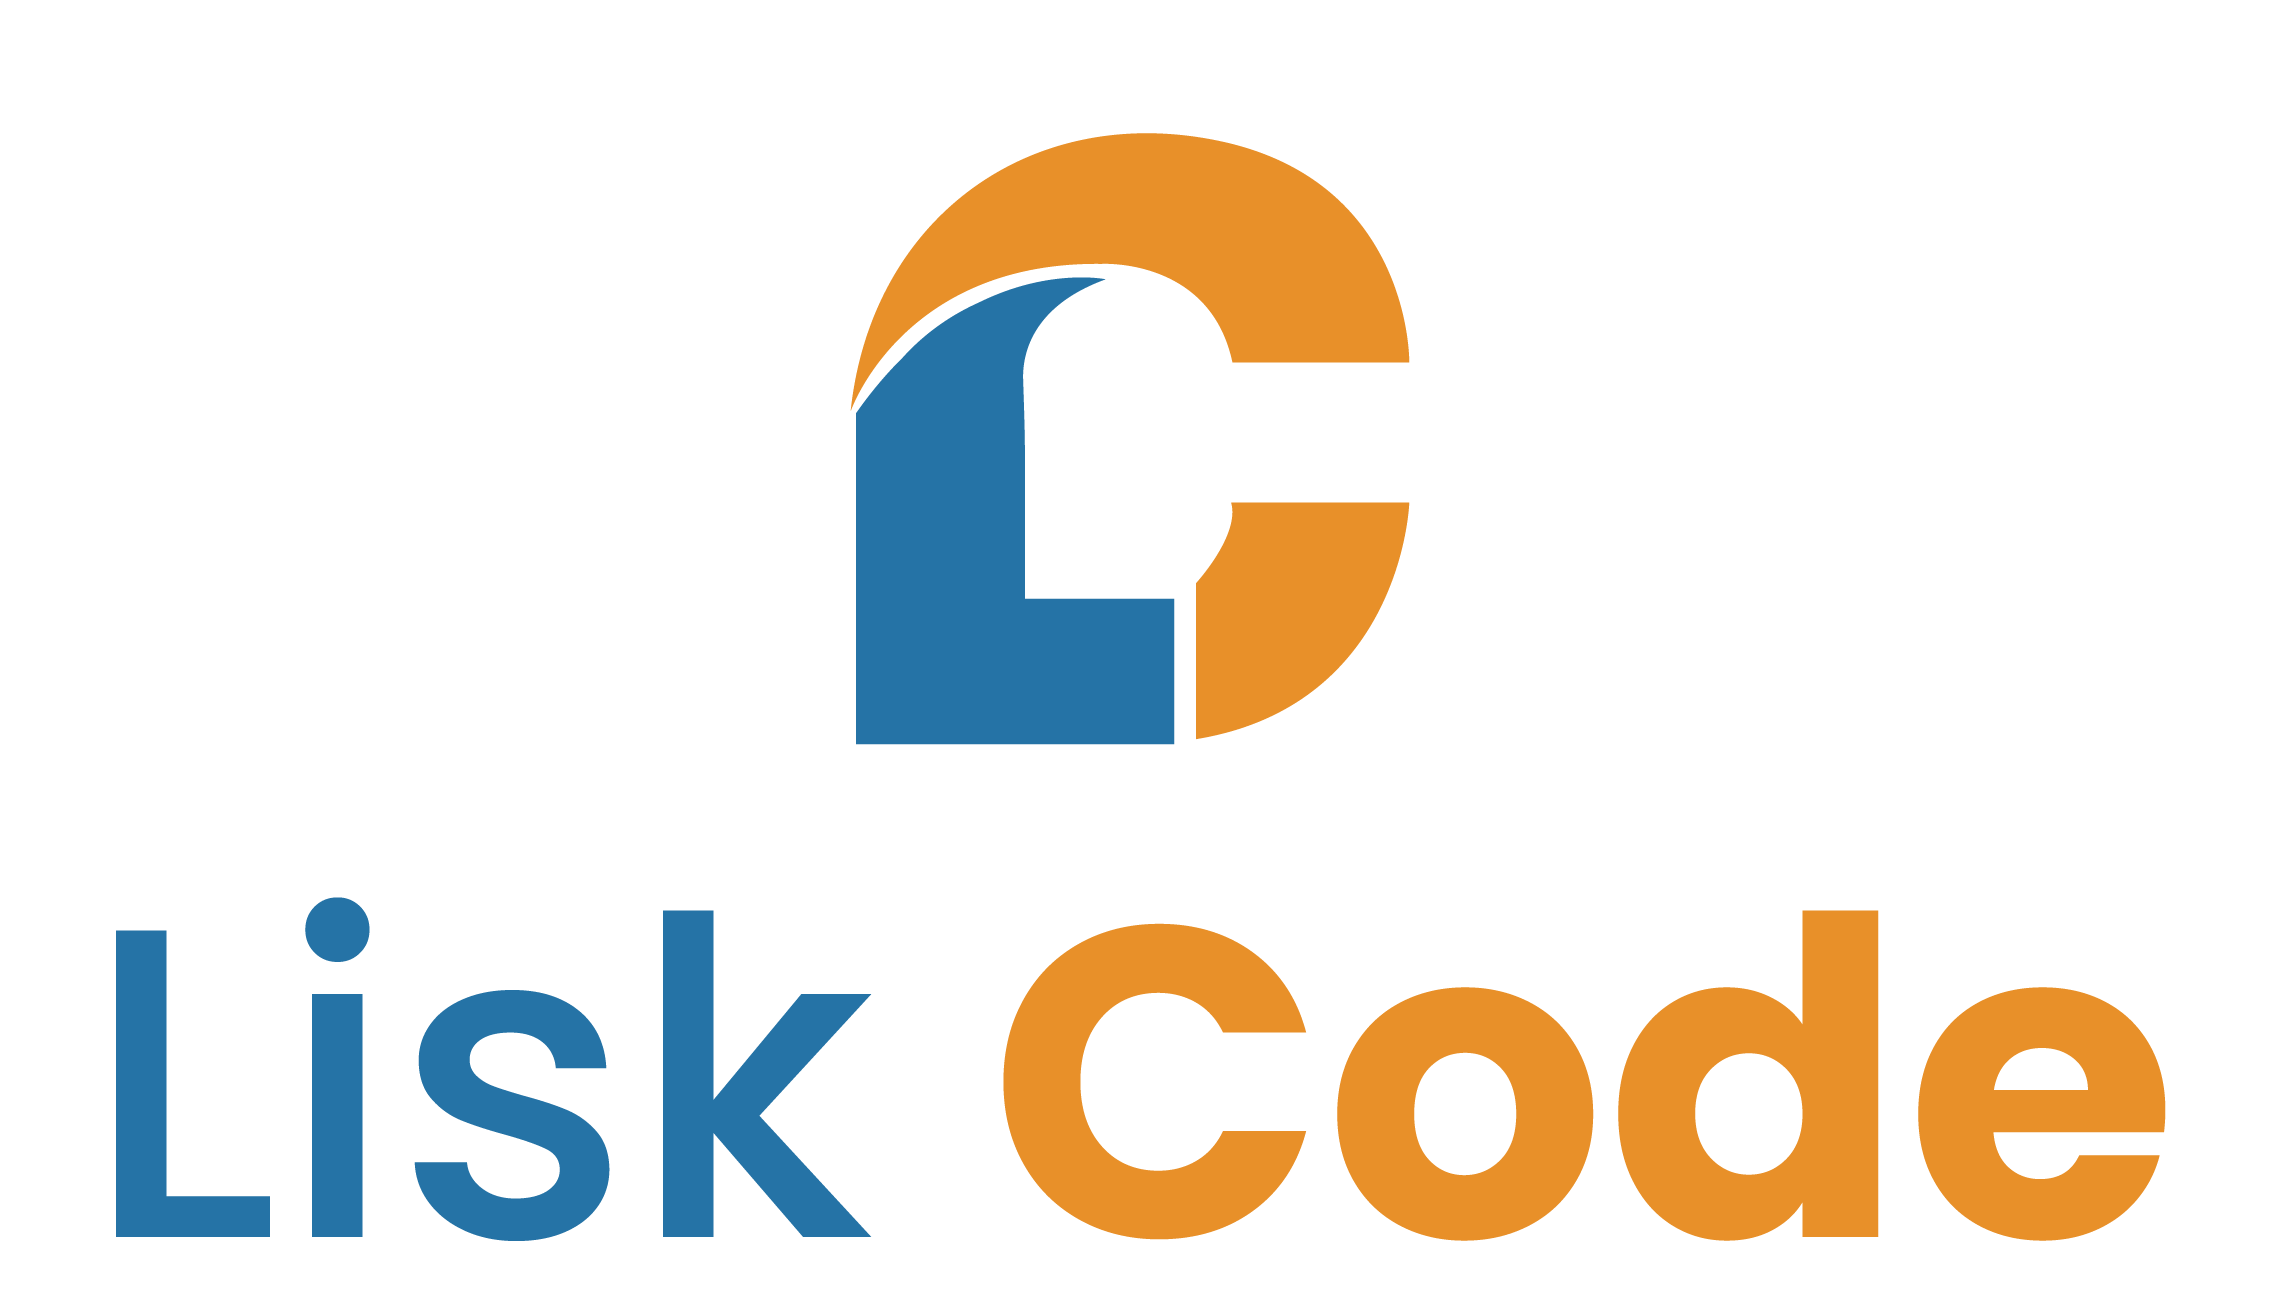 Lisk Code - ทีมงาน Lisk Code